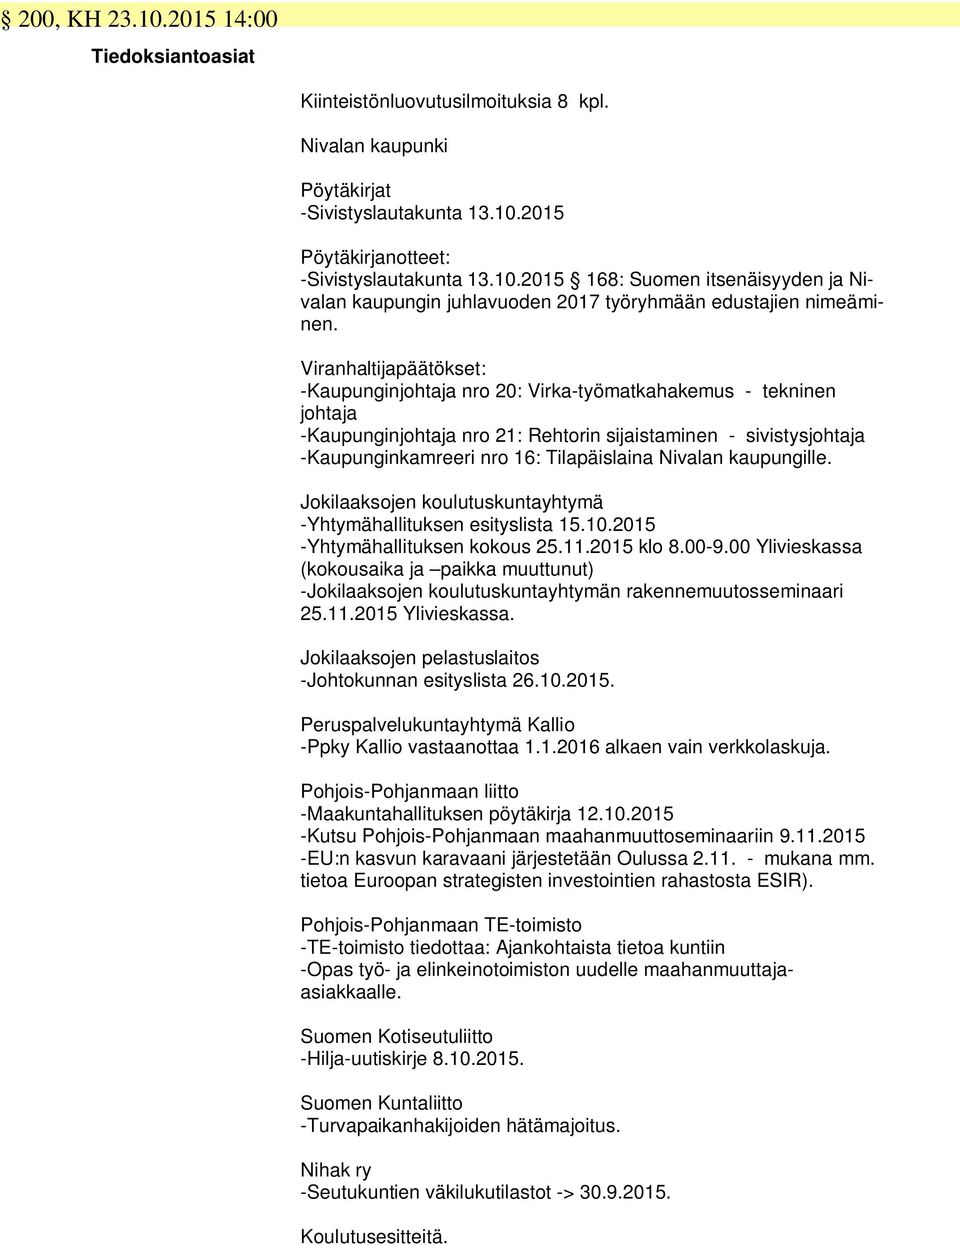 Nivalan kaupungille. Jokilaaksojen koulutuskuntayhtymä -Yhtymähallituksen esityslista 15.10.2015 -Yhtymähallituksen kokous 25.11.2015 klo 8.00-9.